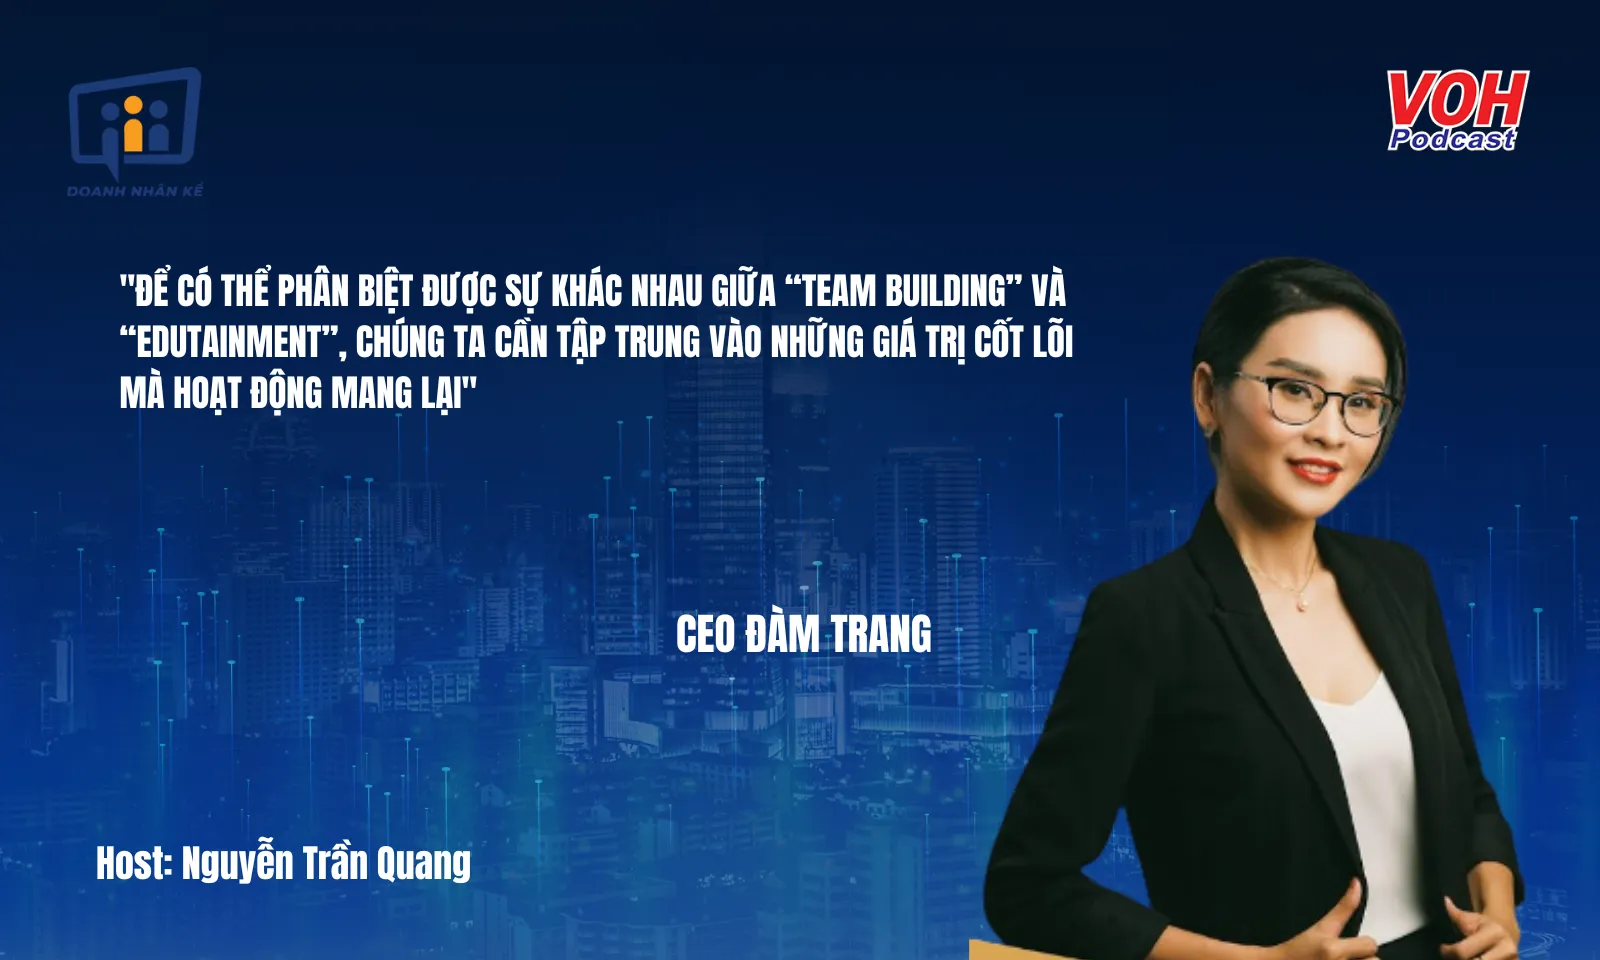 CEO Đàm Trang: “Edutainment” - Giáo dục giải trí | DNK #111